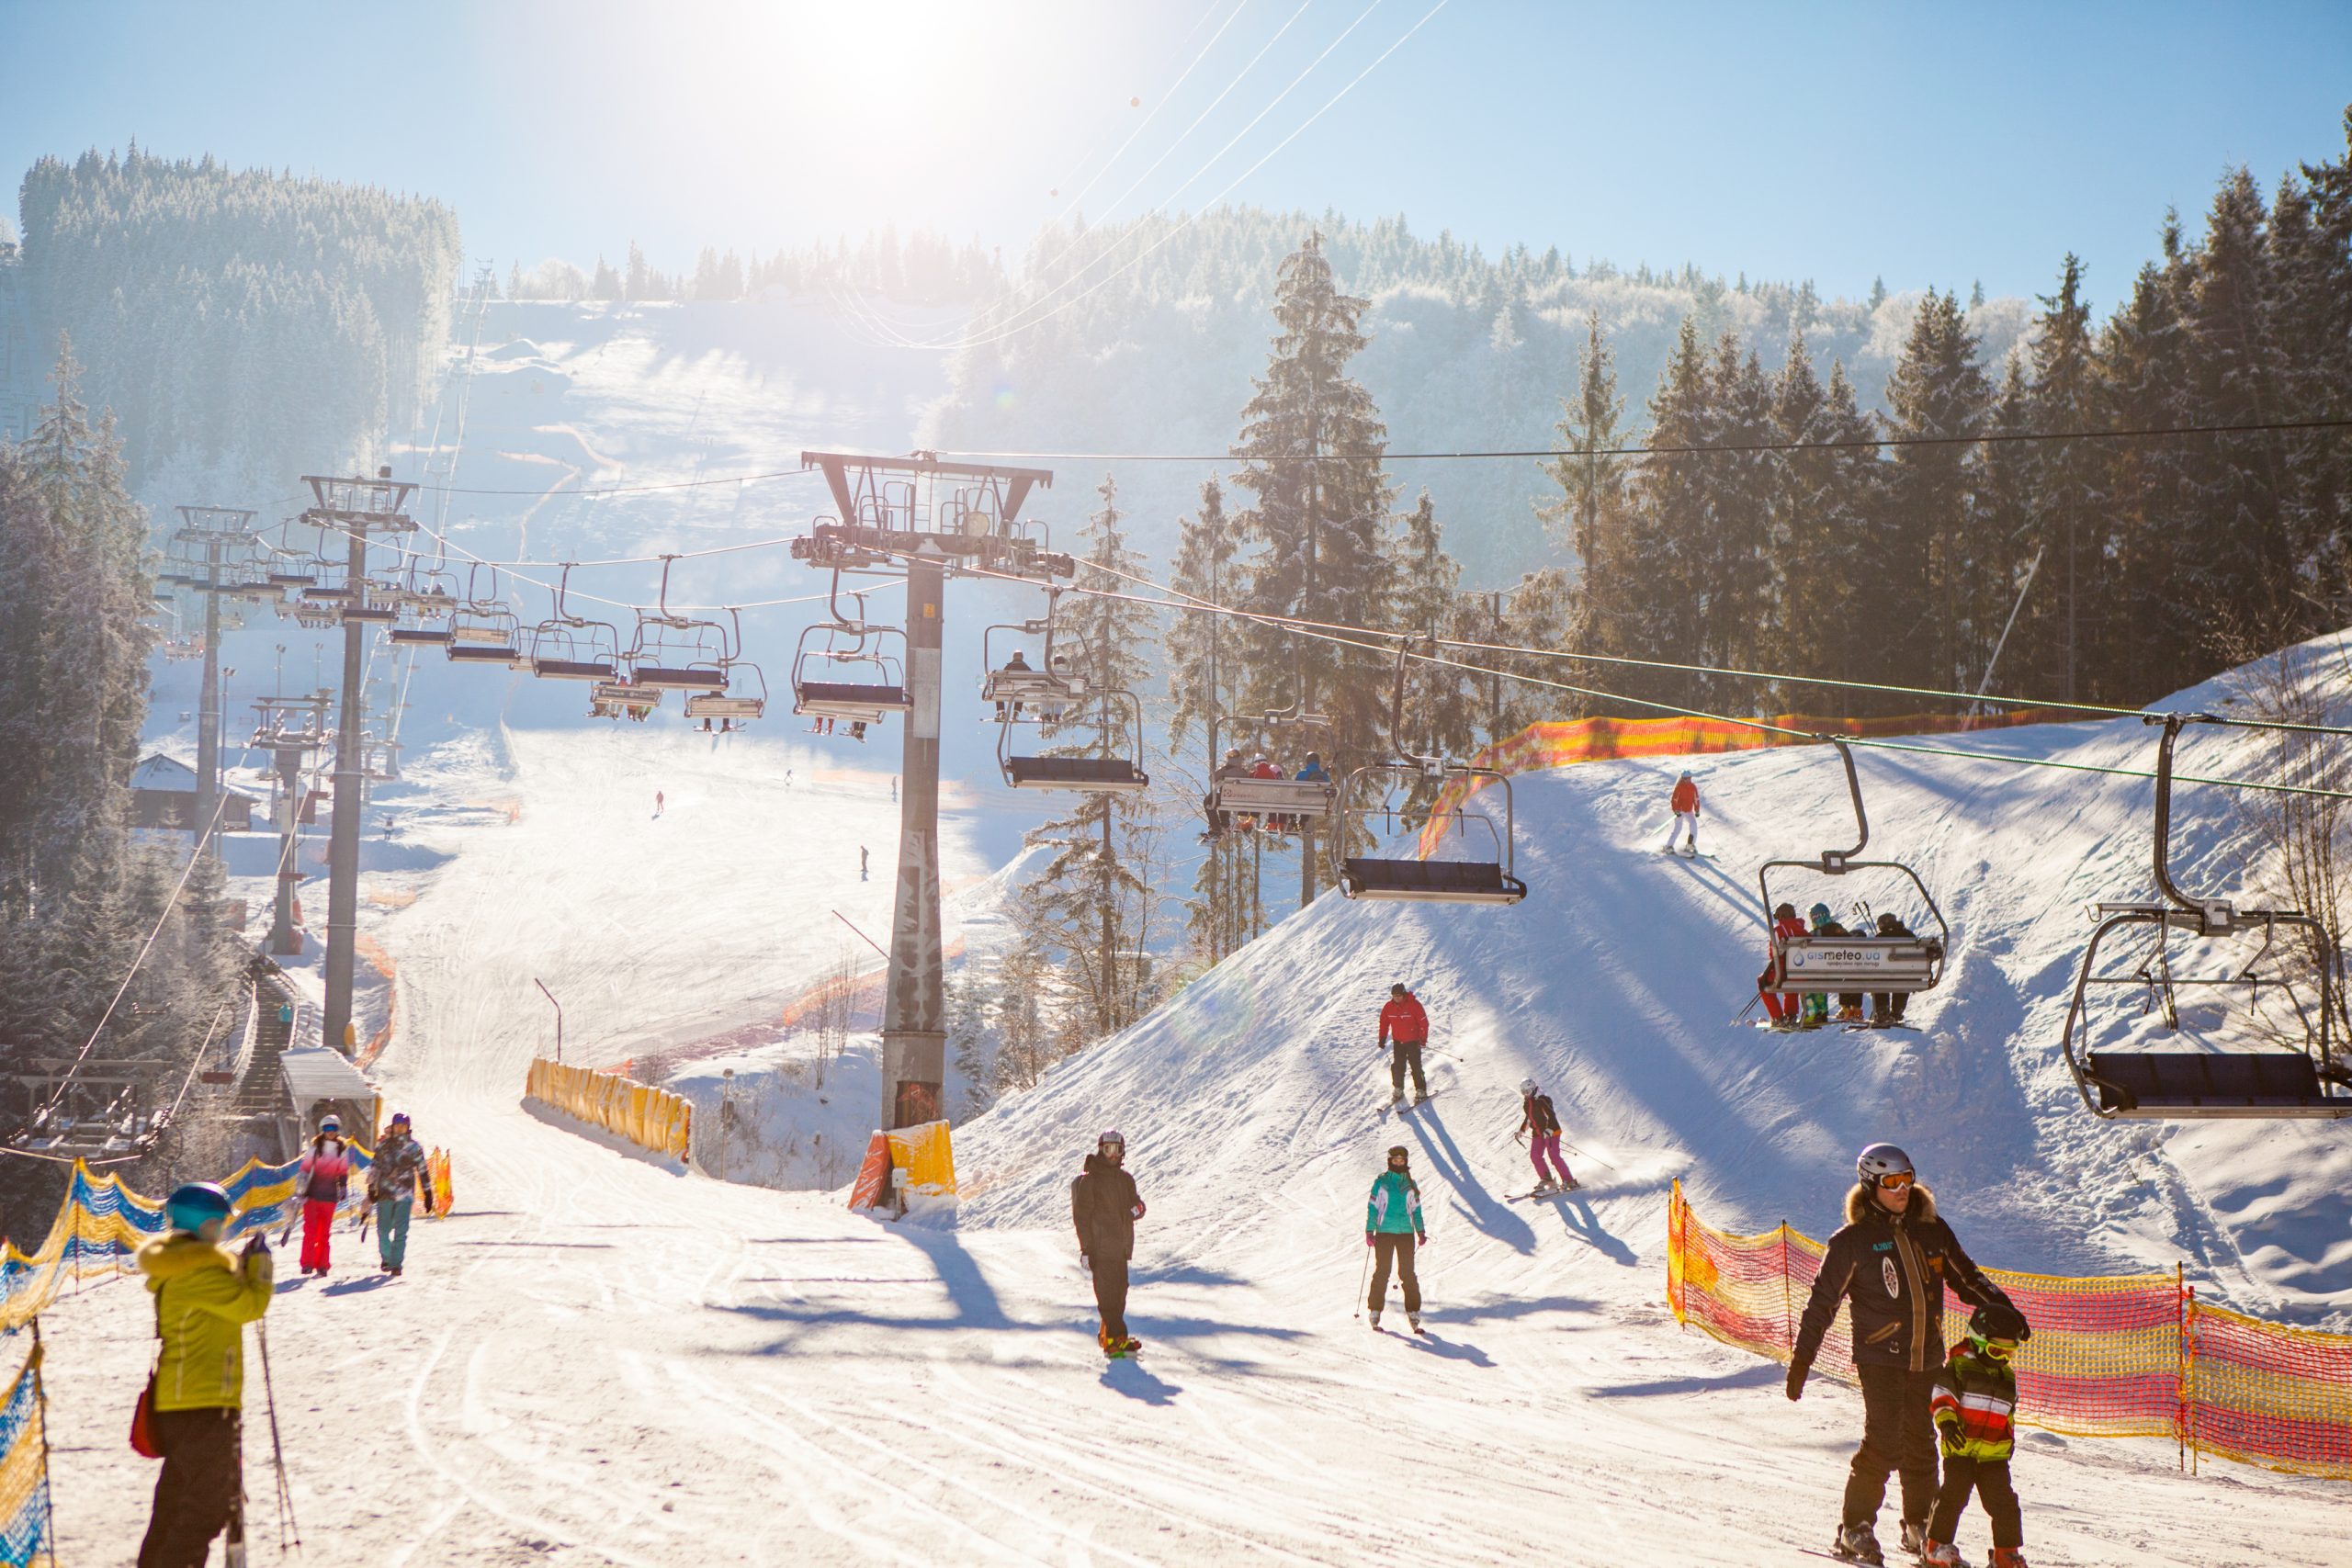 Skiers under ski lift riding up to ski resort